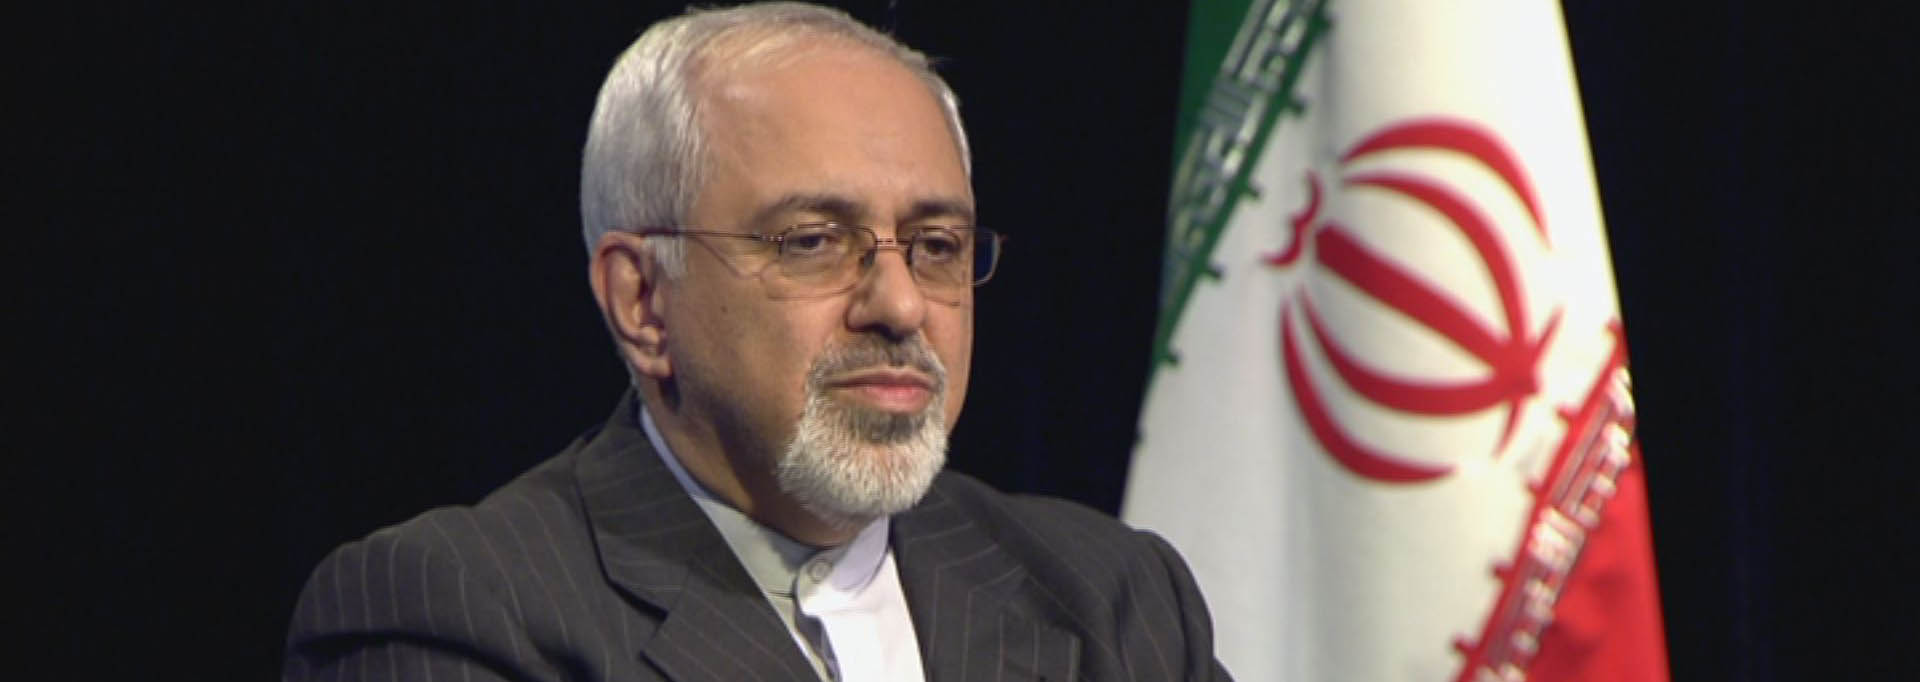 ظریف: از طریق مذاکره هرگونه عذر و بهانه تحریم علیه ایران را از بین می بریم